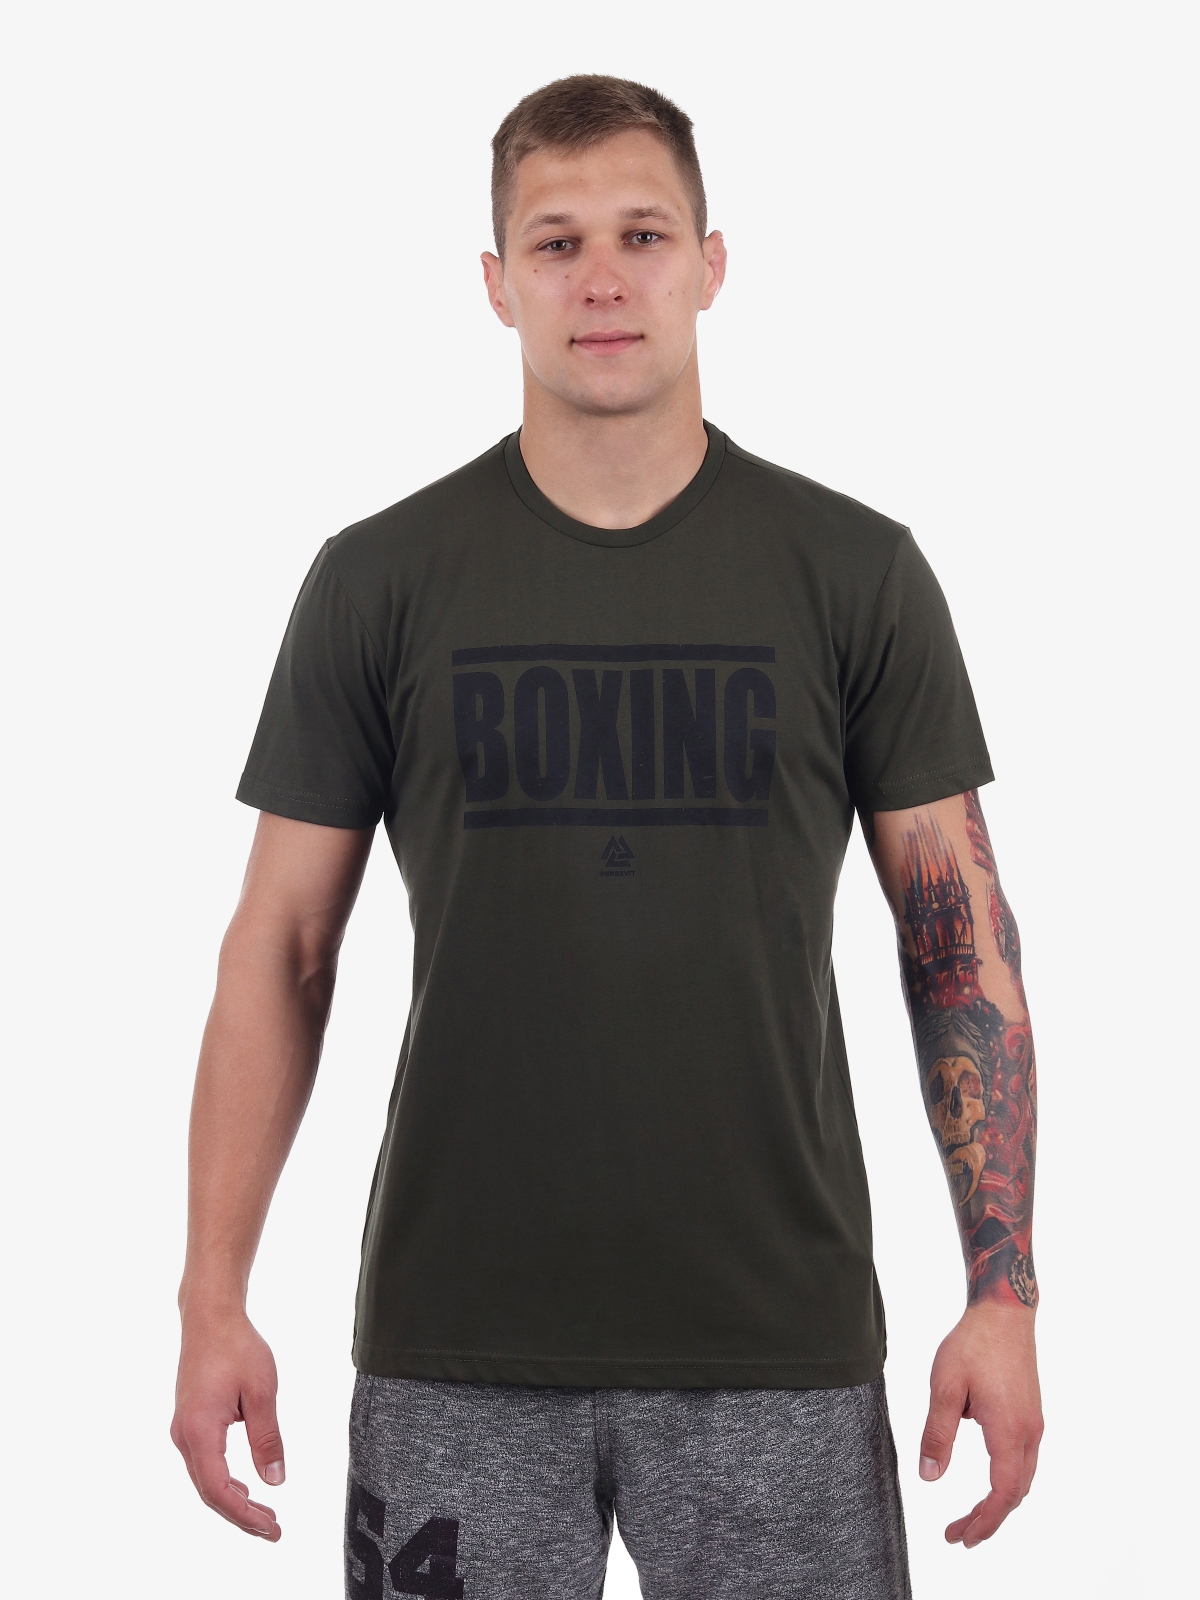 Peresvit Boxing T-Shirt Military Green